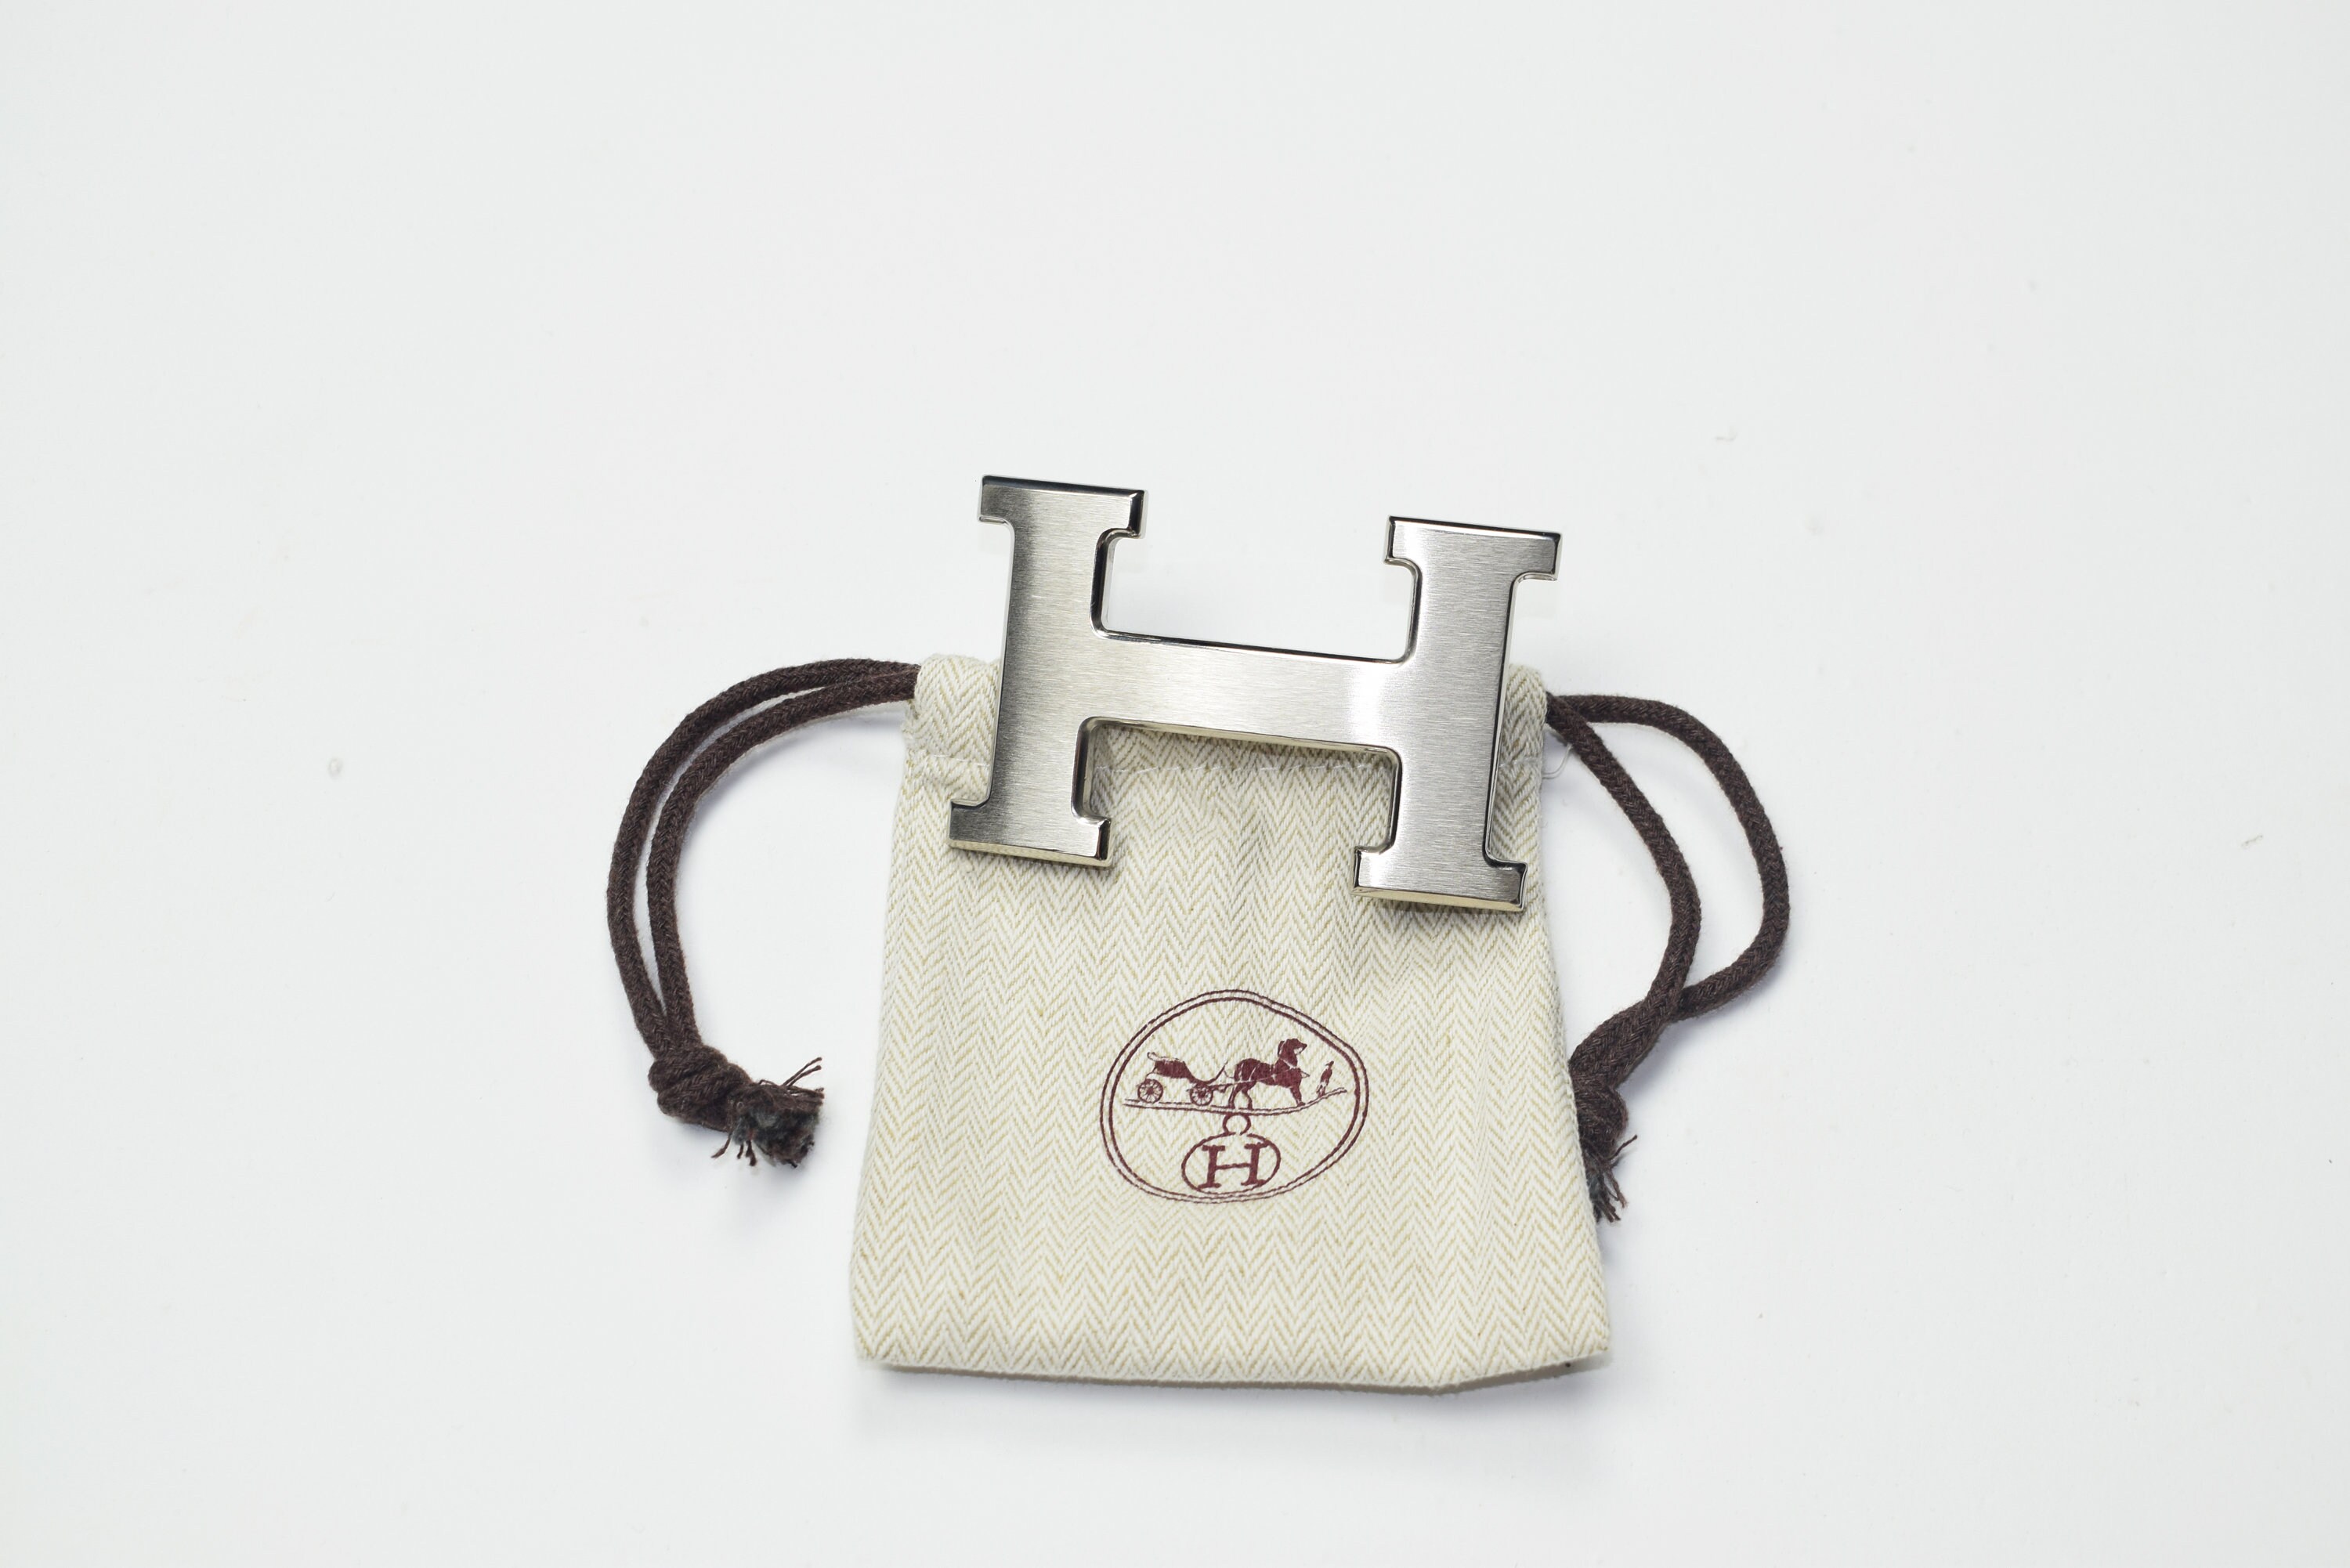 Hermes Bag Vintage - Etsy